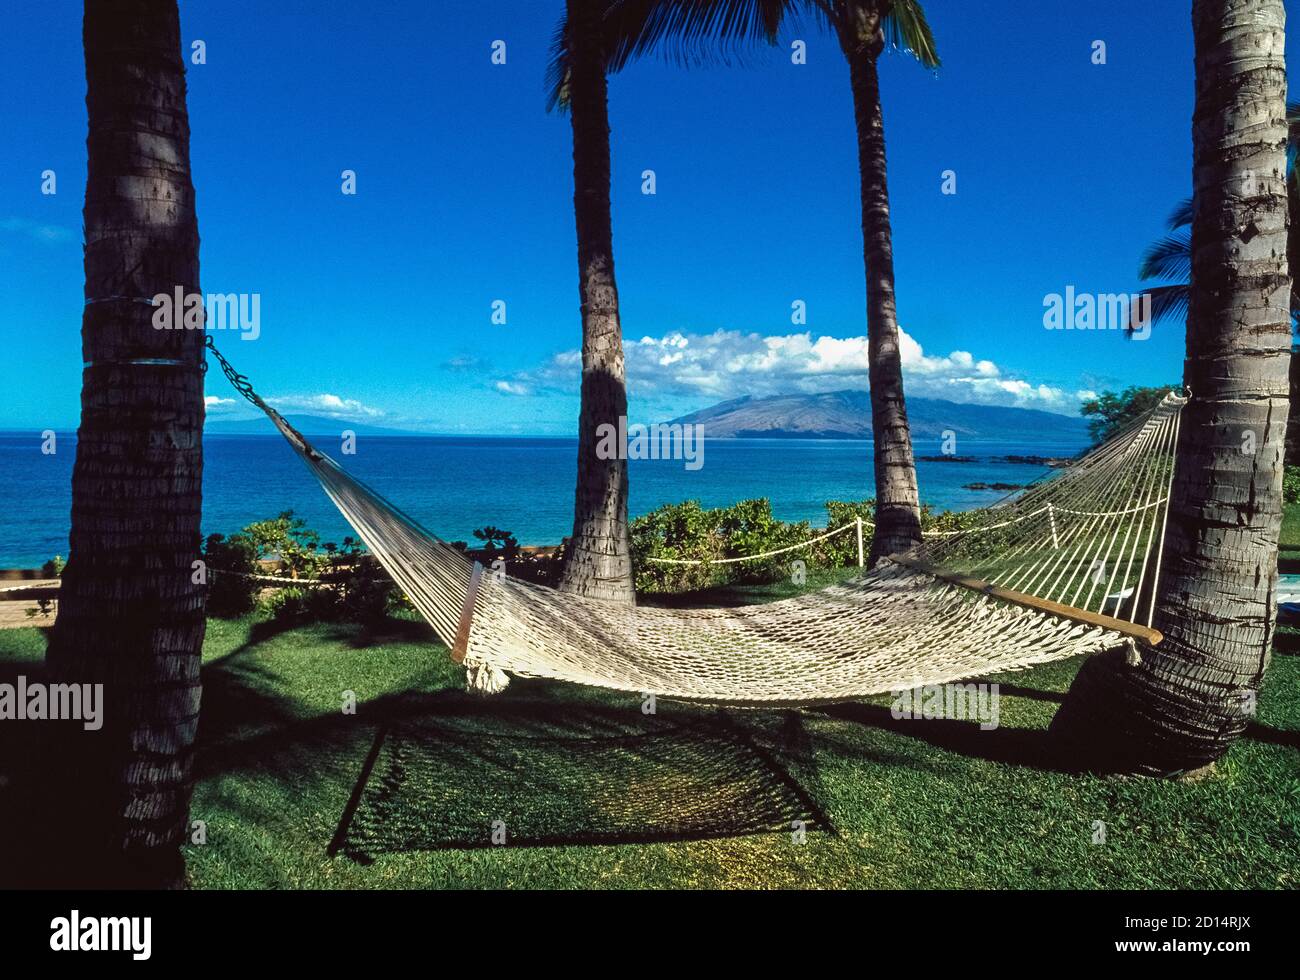 Una hamaca al aire libre suspendida entre dos palmeras simboliza la  relajación que los turistas anticipan cuando viajan a las islas tropicales  hawaianas en el Océano Pacífico Norte a unas 2,400 millas